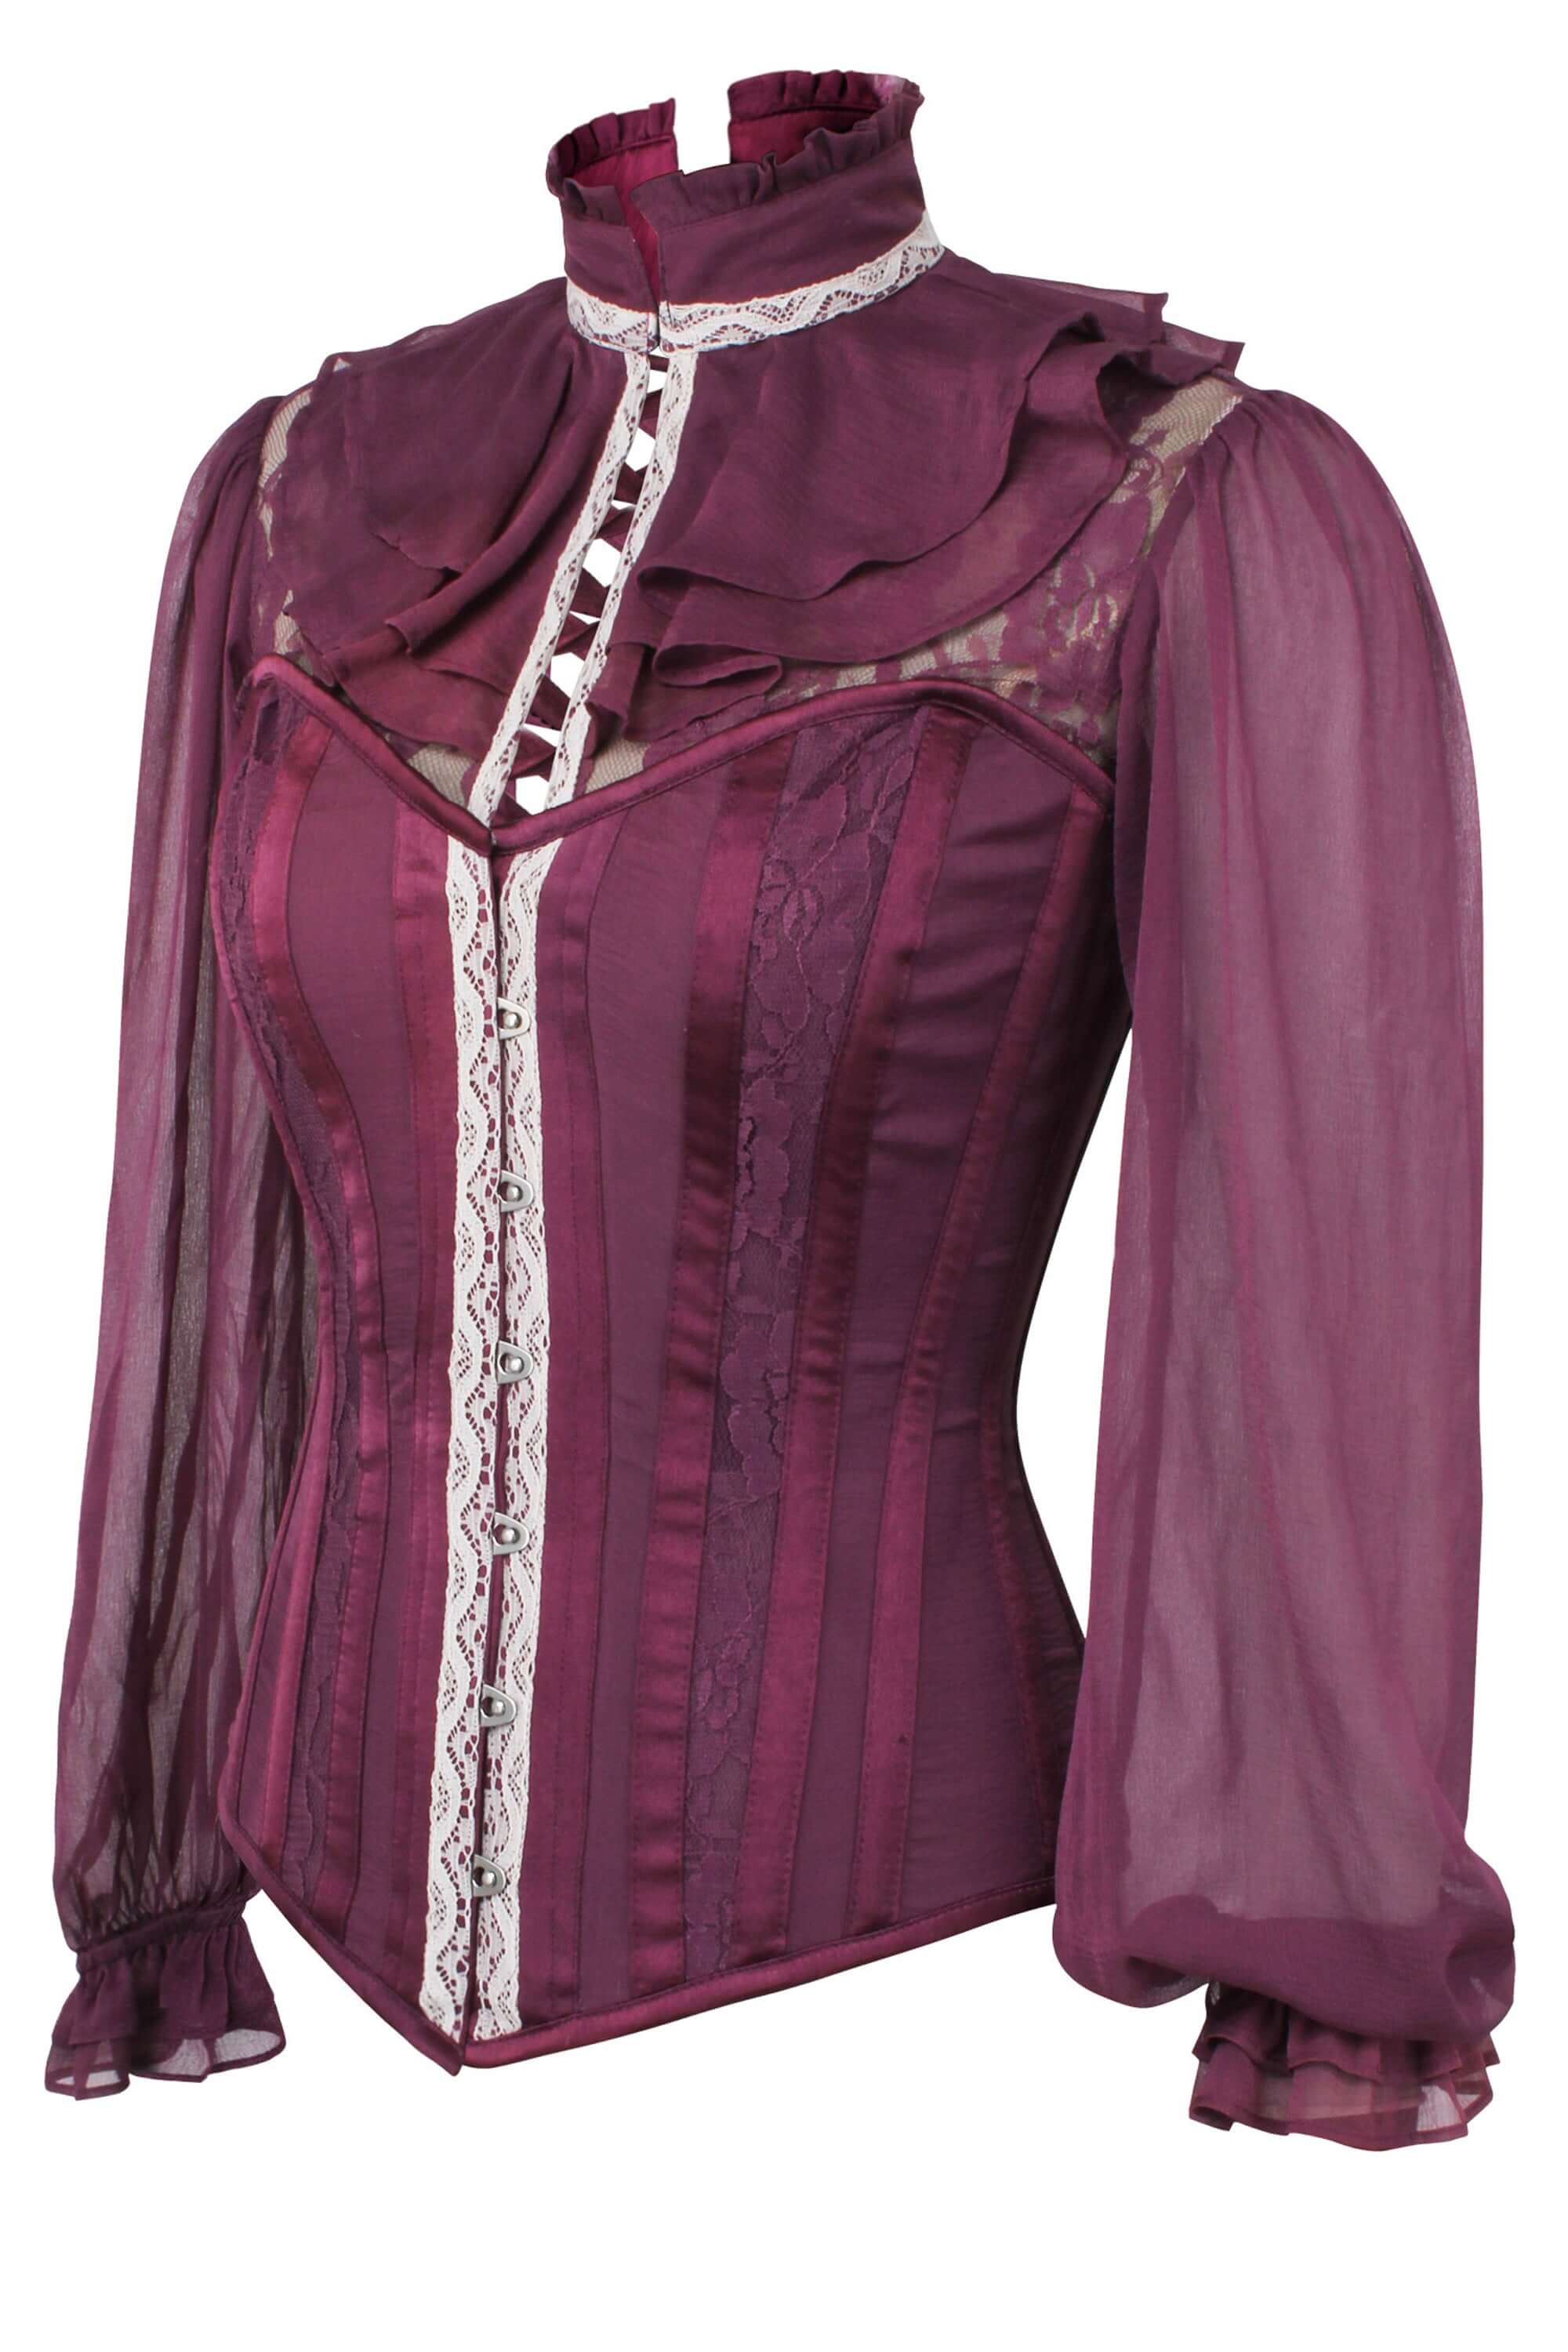 Vintage Victorian Gothic Purple Black Velvet Corset Bustier - Tops & blouses